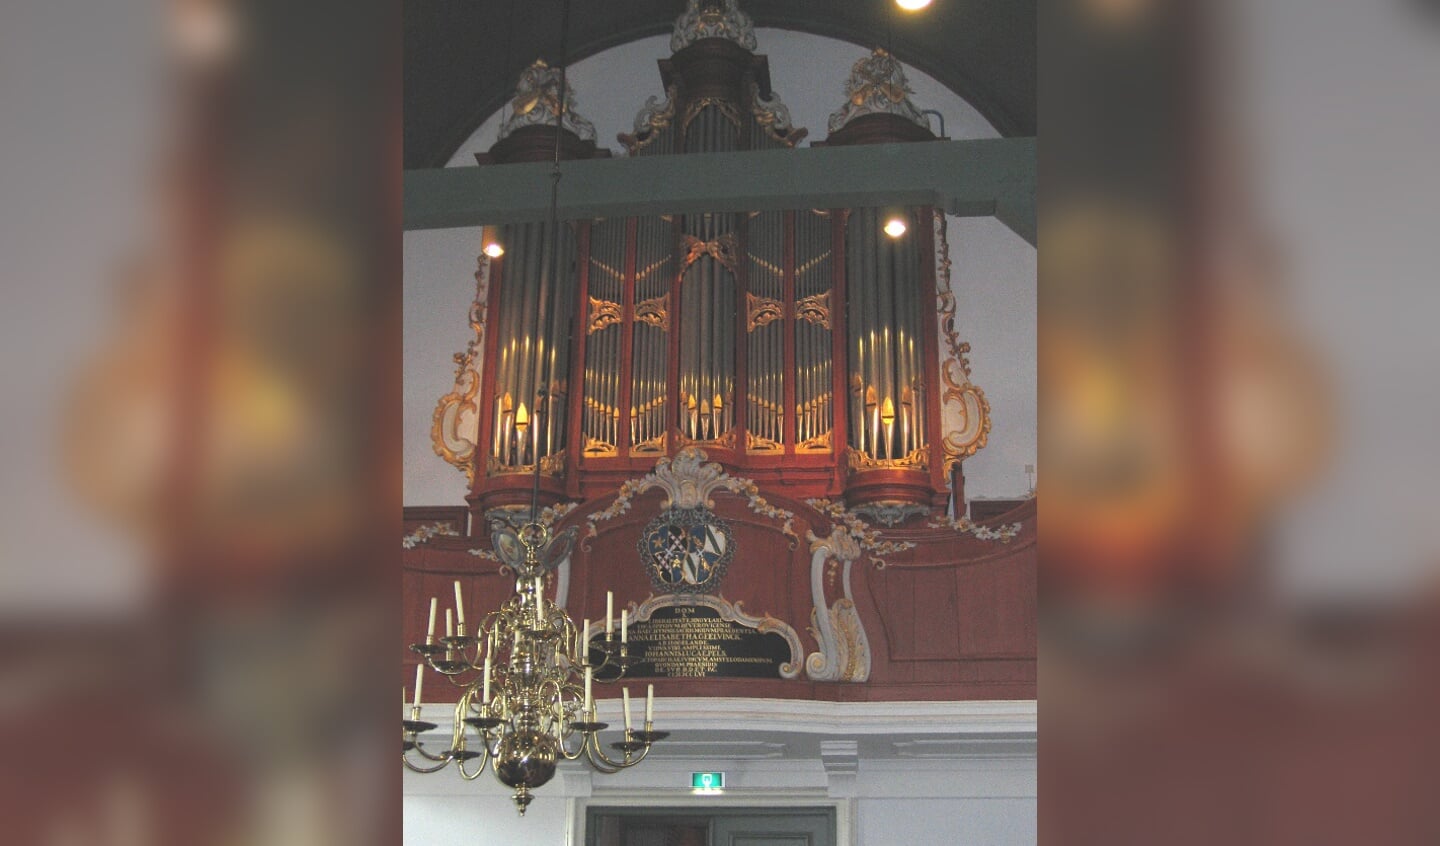 Op 7 augustus is er een concert in de Grote Kerk Beverwijk.